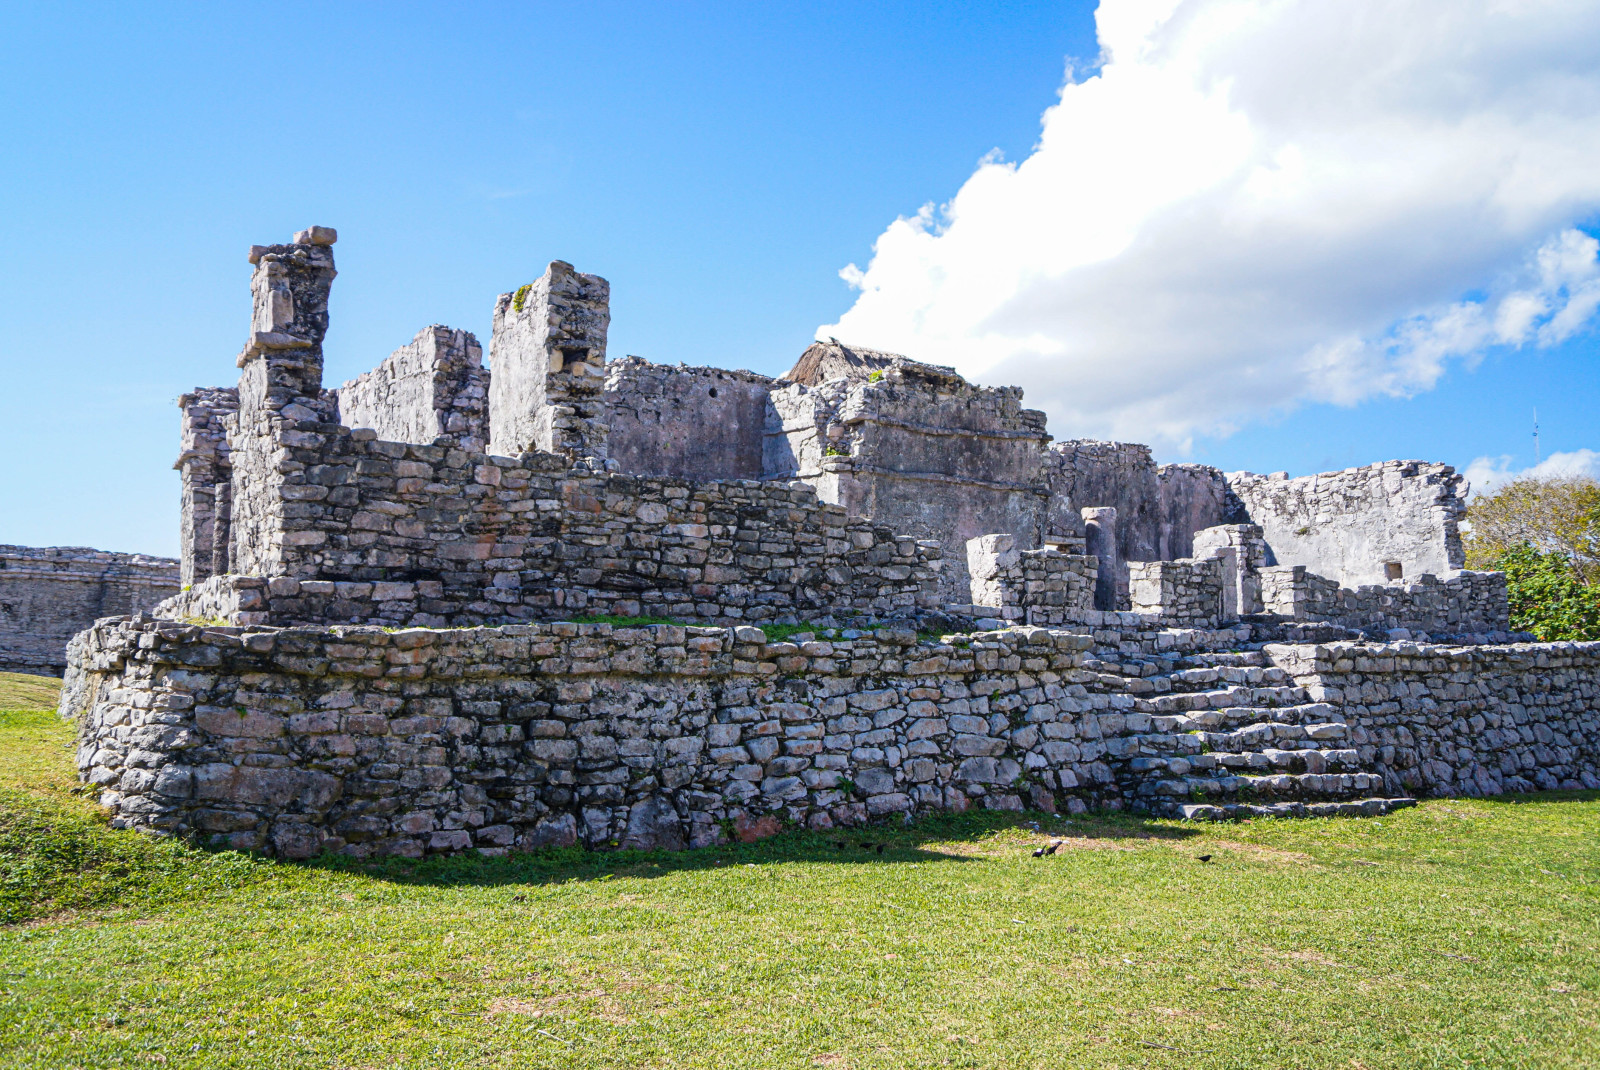 Ruins in Tulum, Mexico